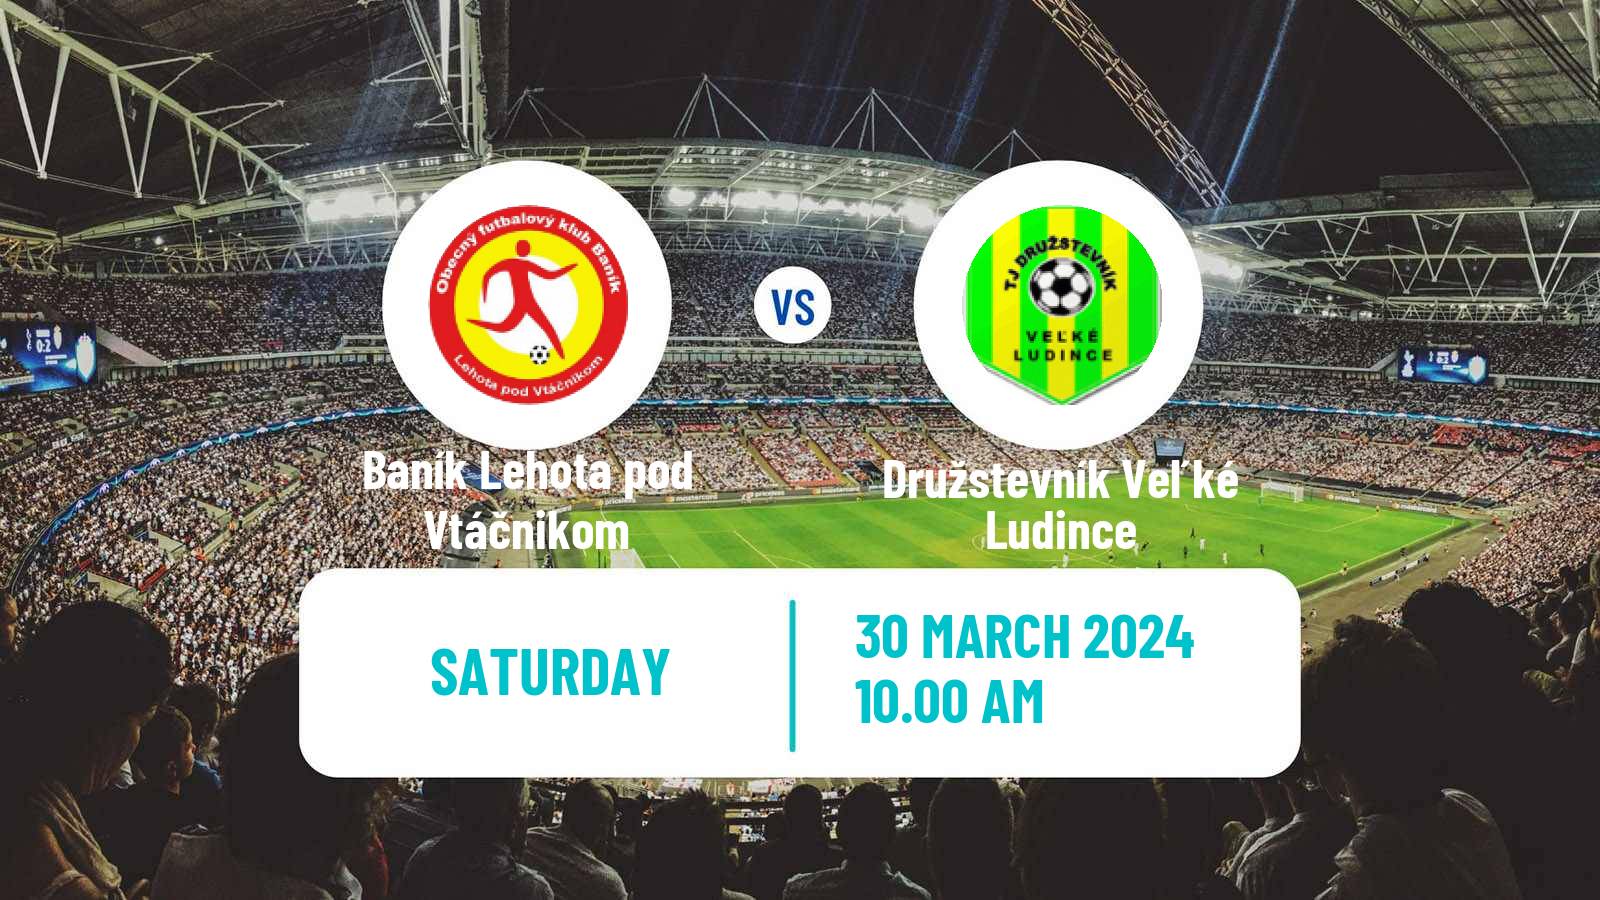 Soccer Slovak 3 Liga West Baník Lehota pod Vtáčnikom - Družstevník Veľké Ludince